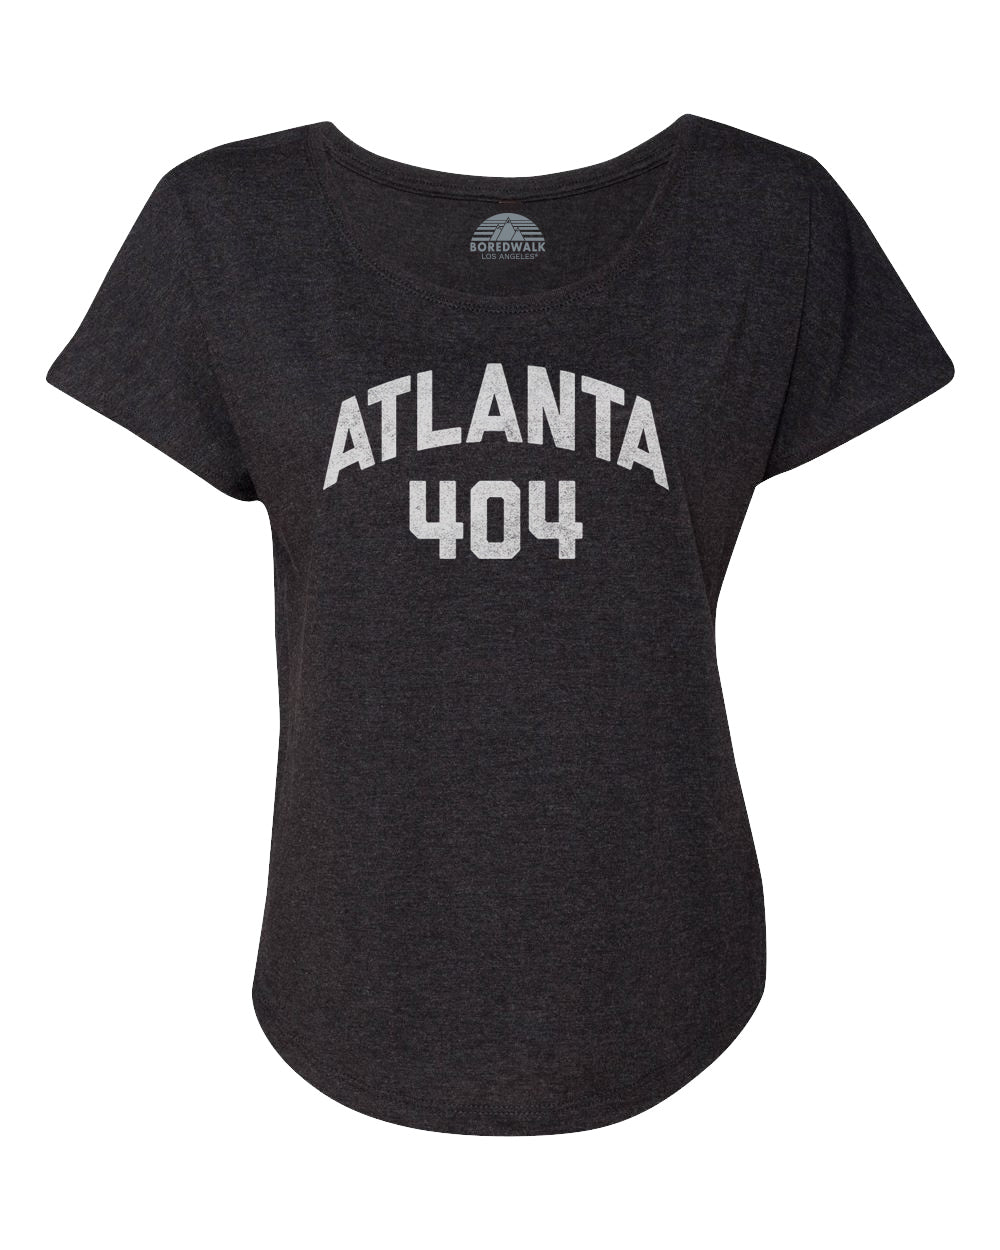 Women's Atlanta 404 Area Code Scoop Neck T-Shirt